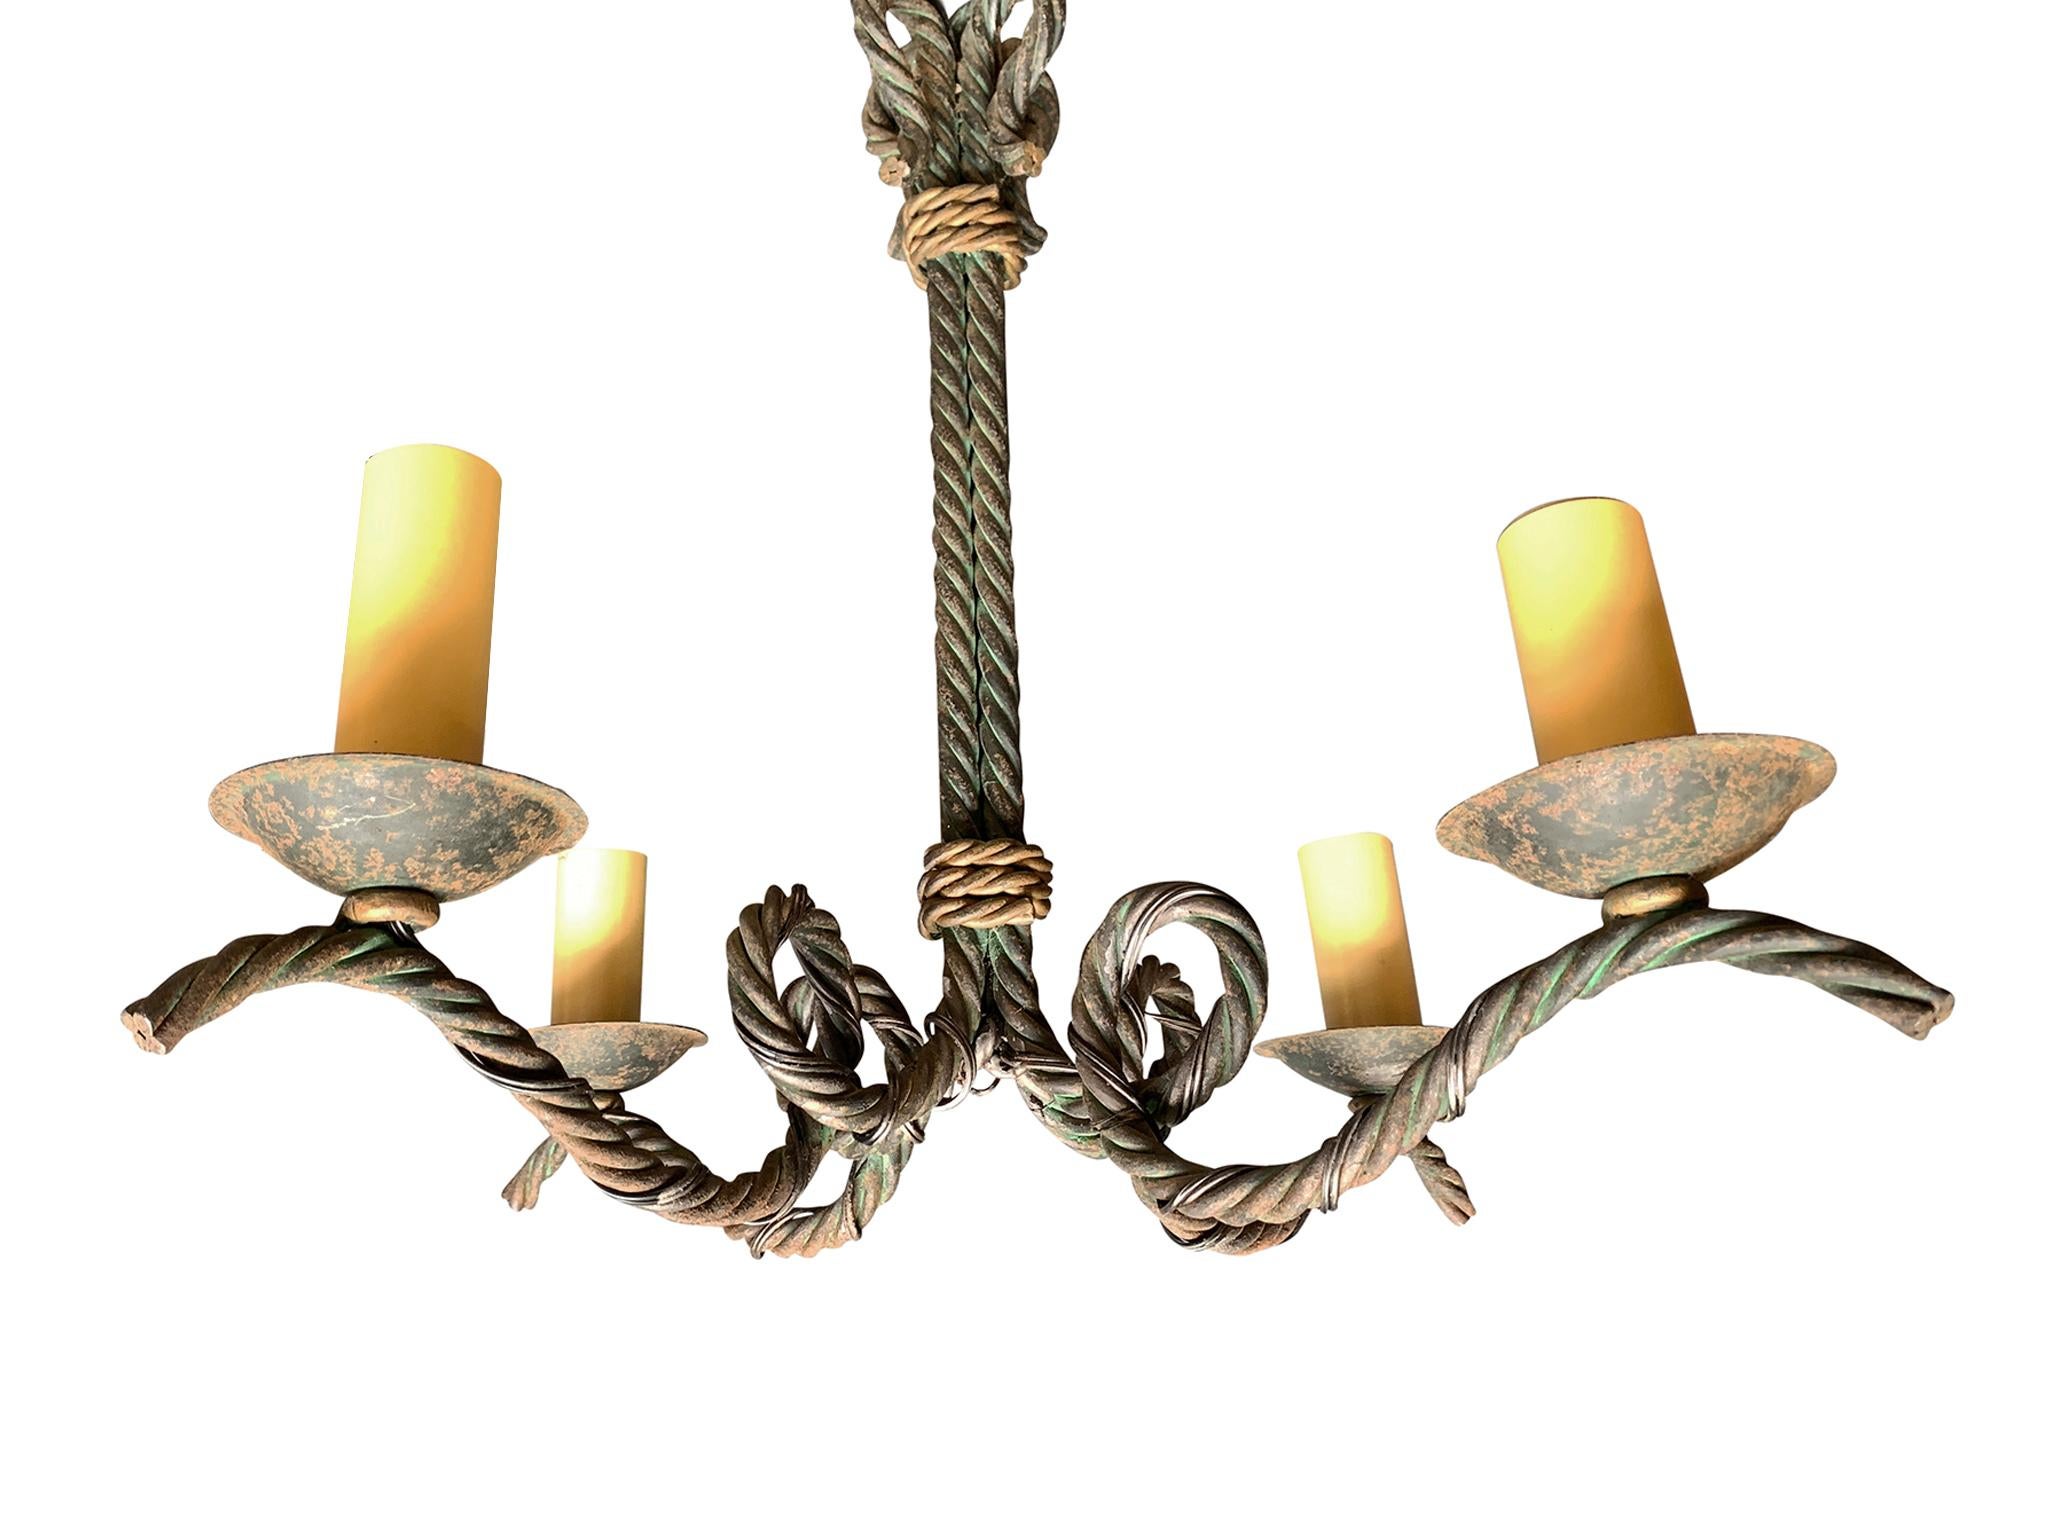 Ce lustre français des années 1930 présente un élégant design de corde torsadée construit en fer forgé. Il comporte 4 bras de candélabre, chacun d'entre eux culminant avec une douille à une ampoule. Le lustre a été recâblé et dispose de nouvelles